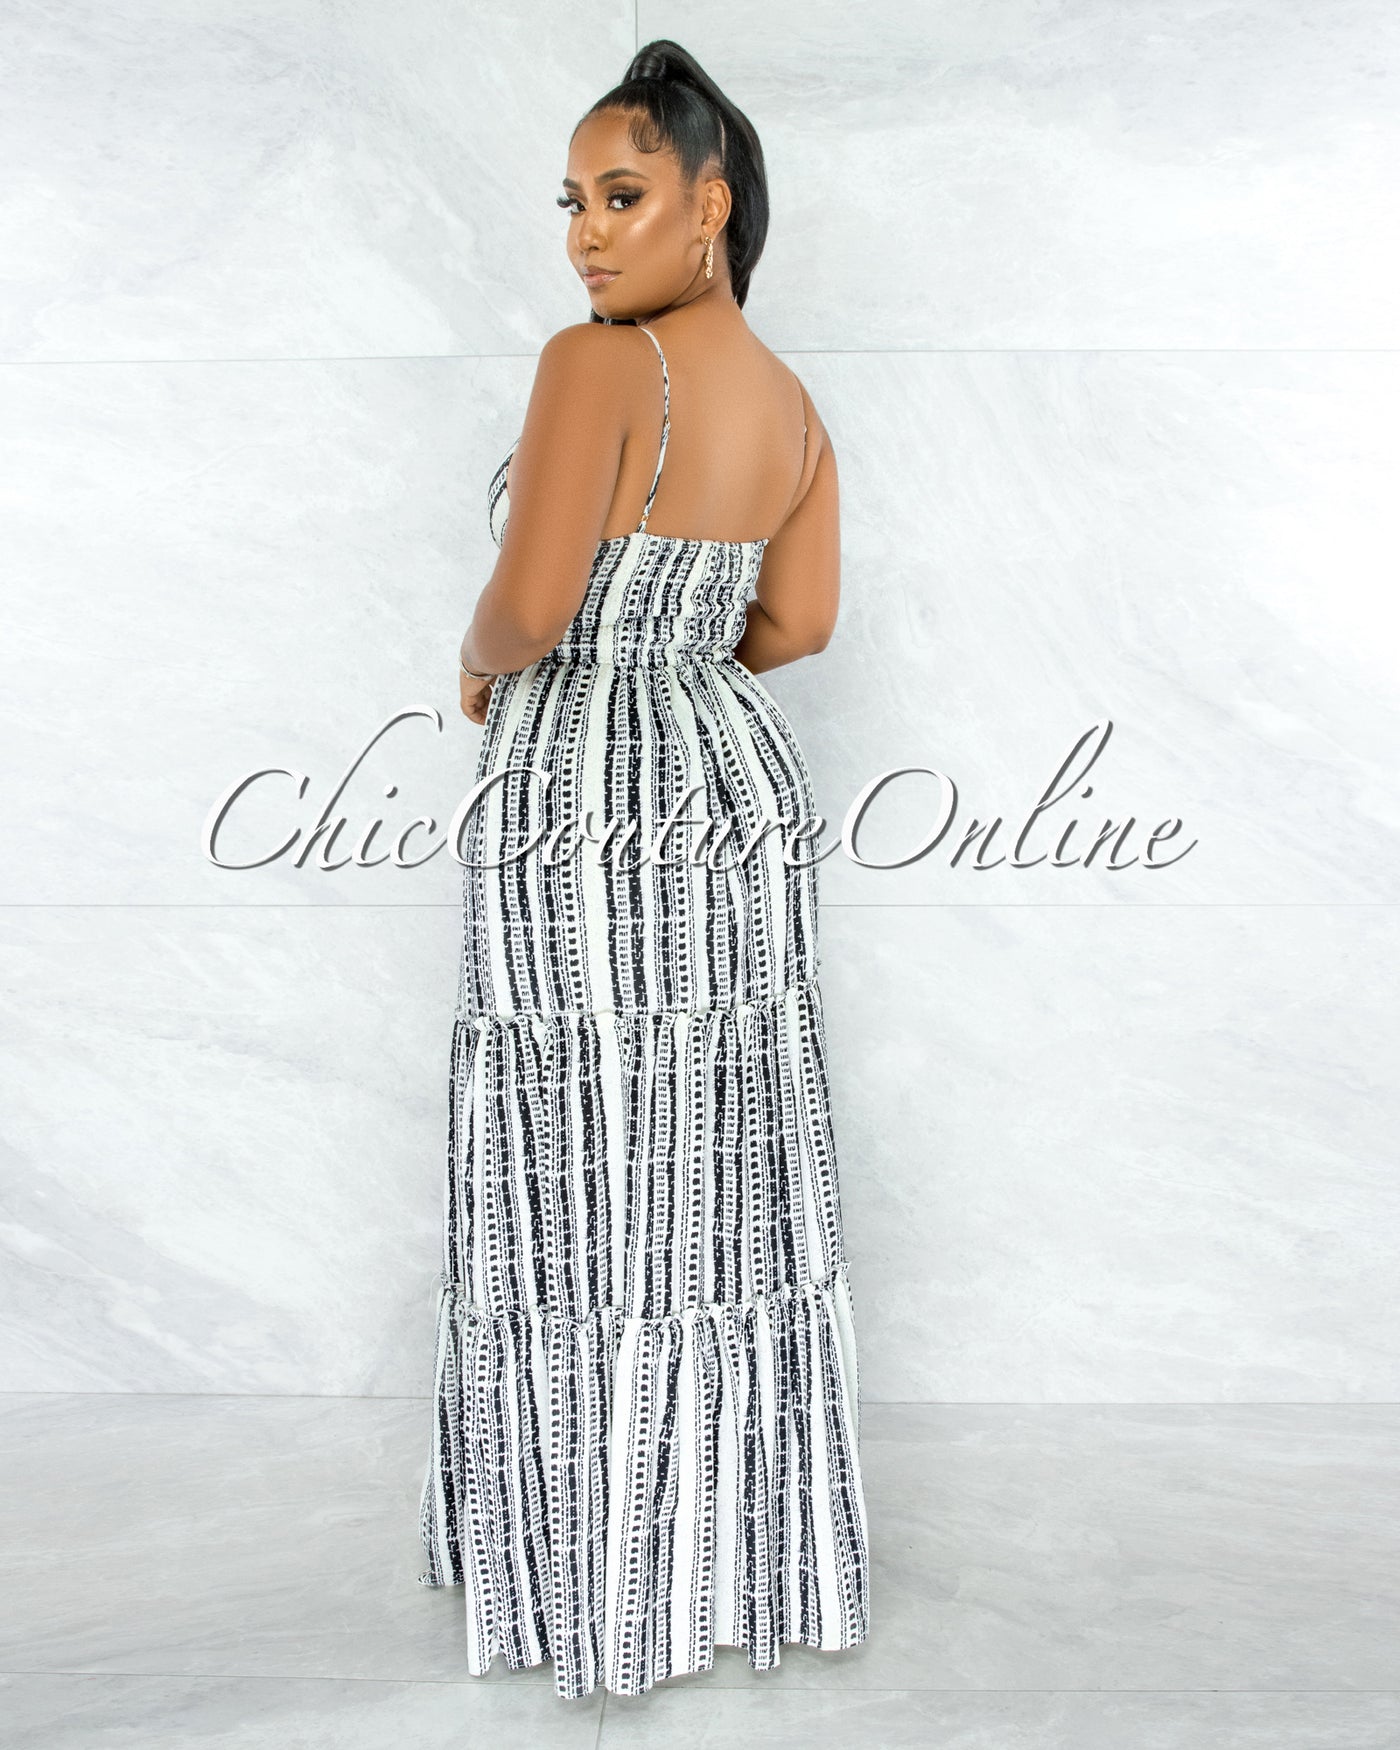 Ohane Black White Print Cut-Out Maxi Dress